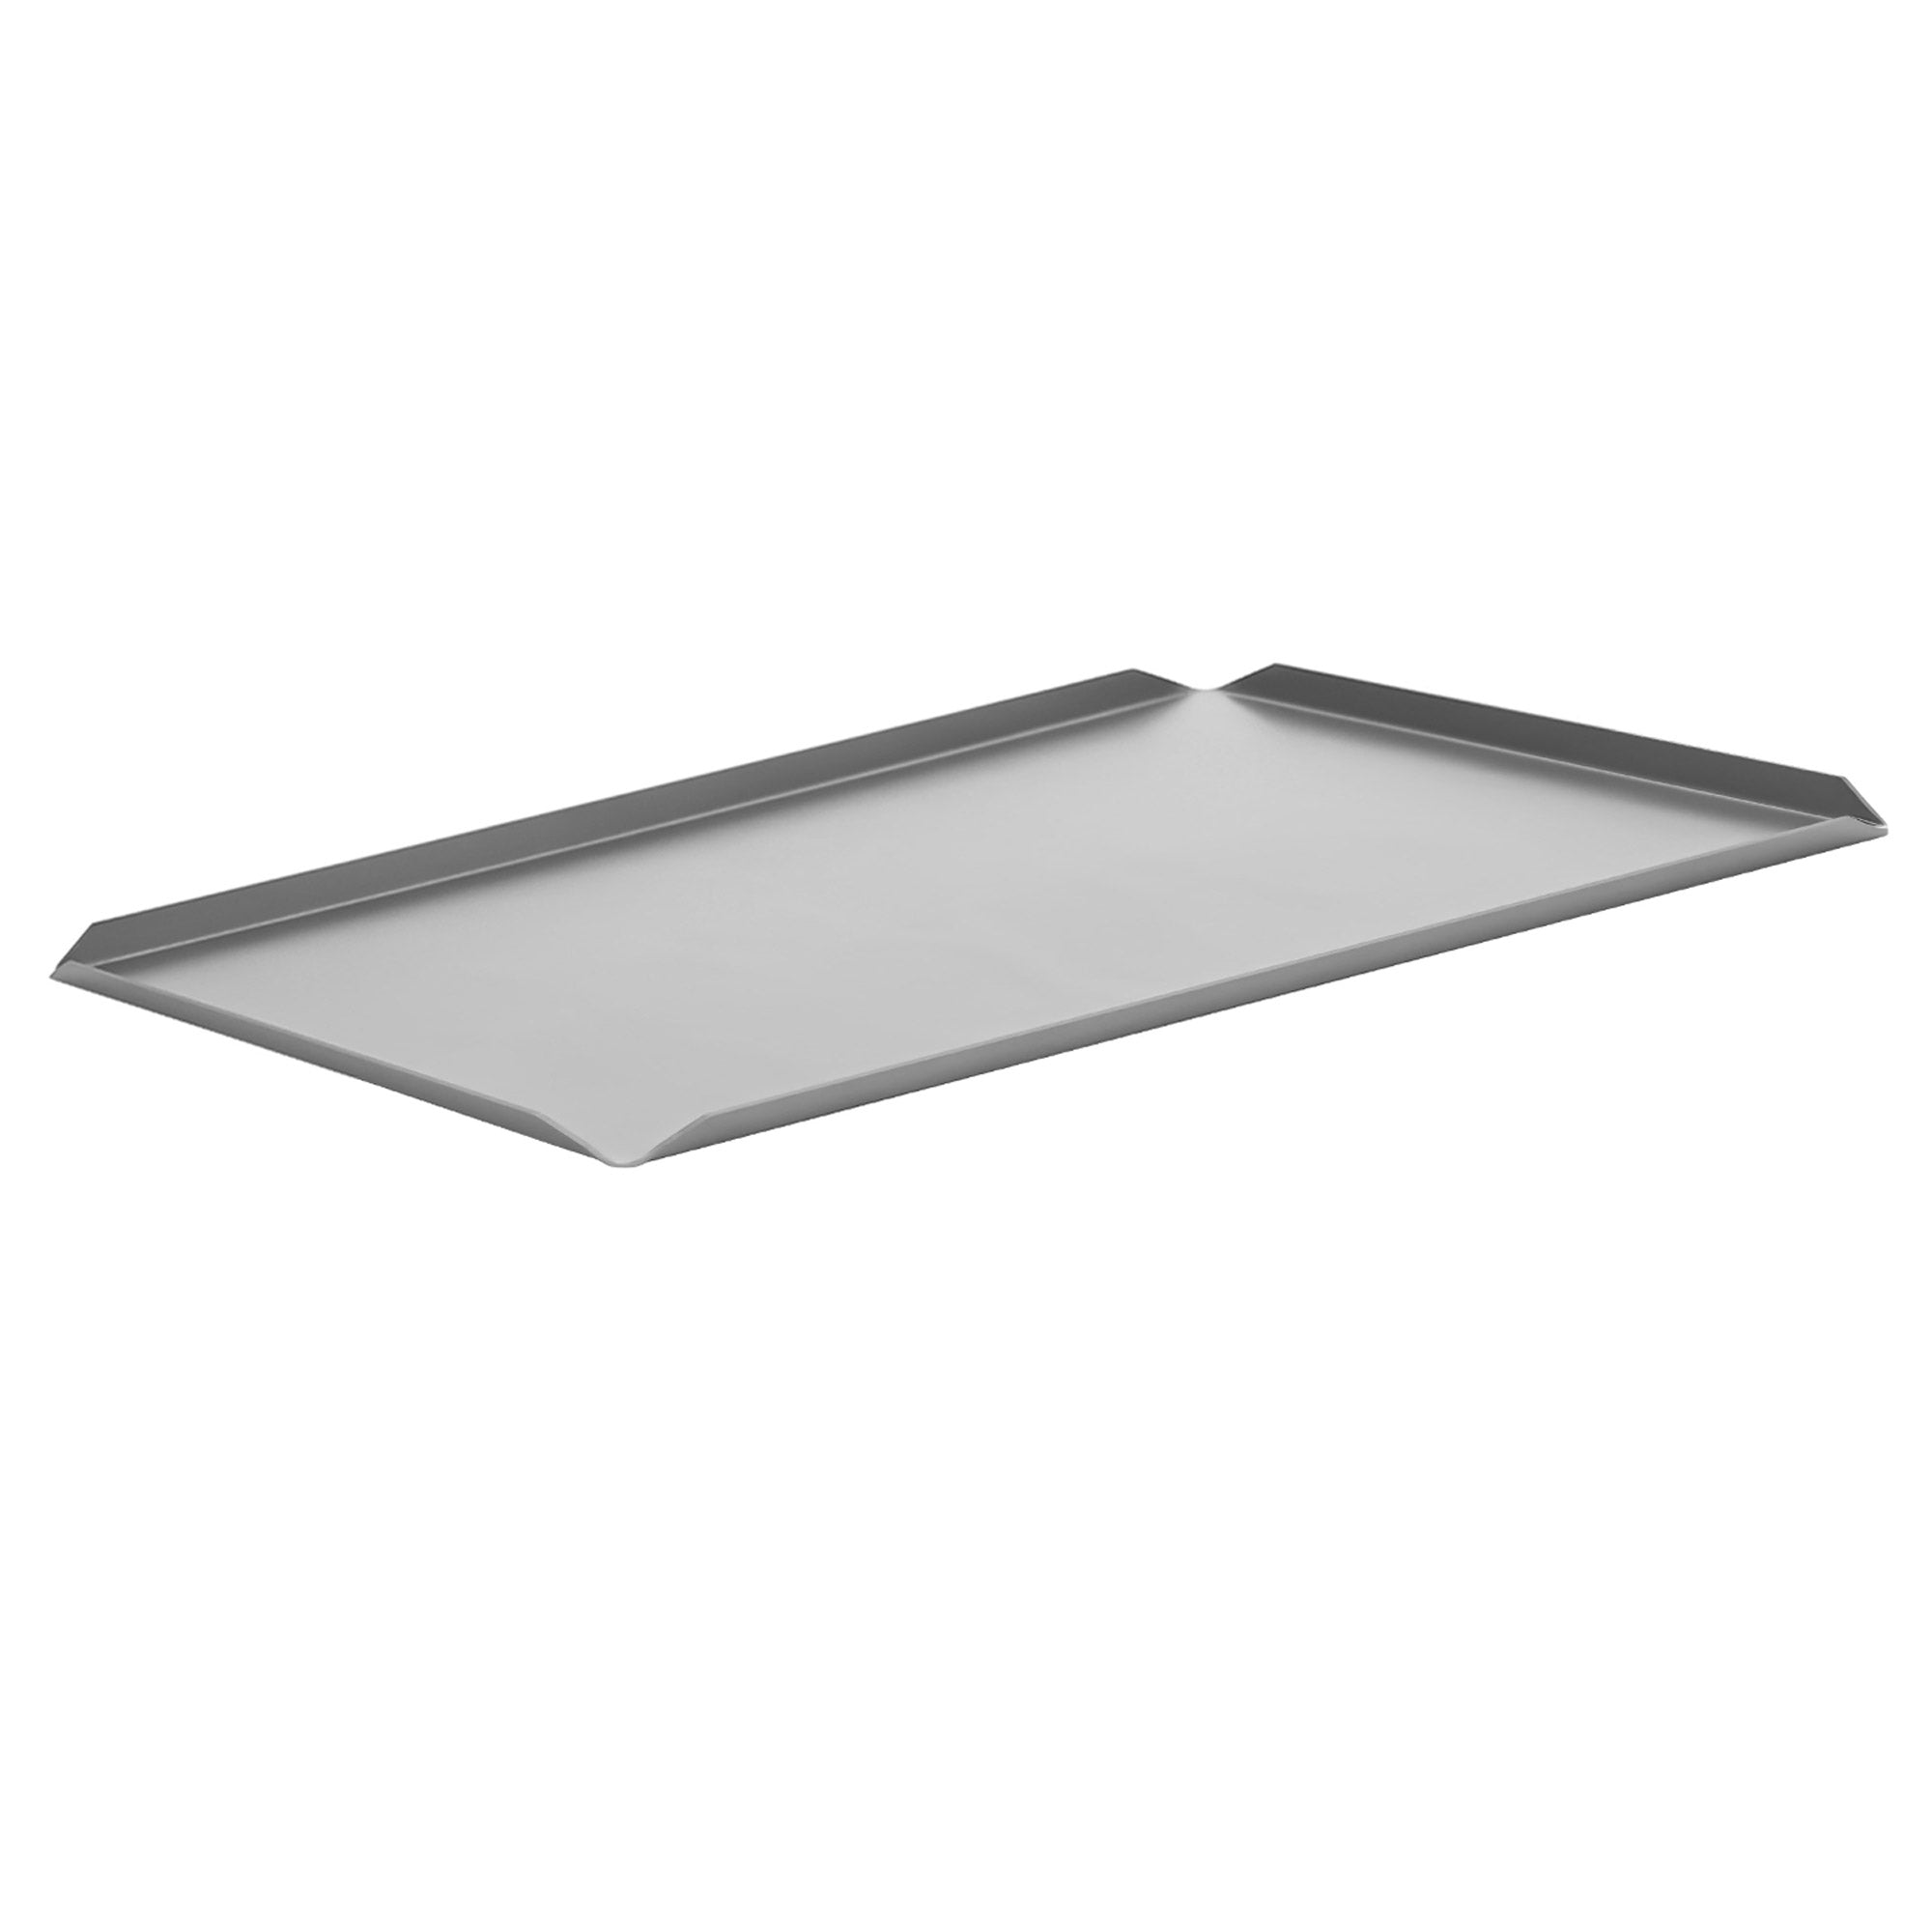 (5 stk) Konfekt og presentasjonsplate laget av aluminium - 700 x 100 x 10 mm - Sølv